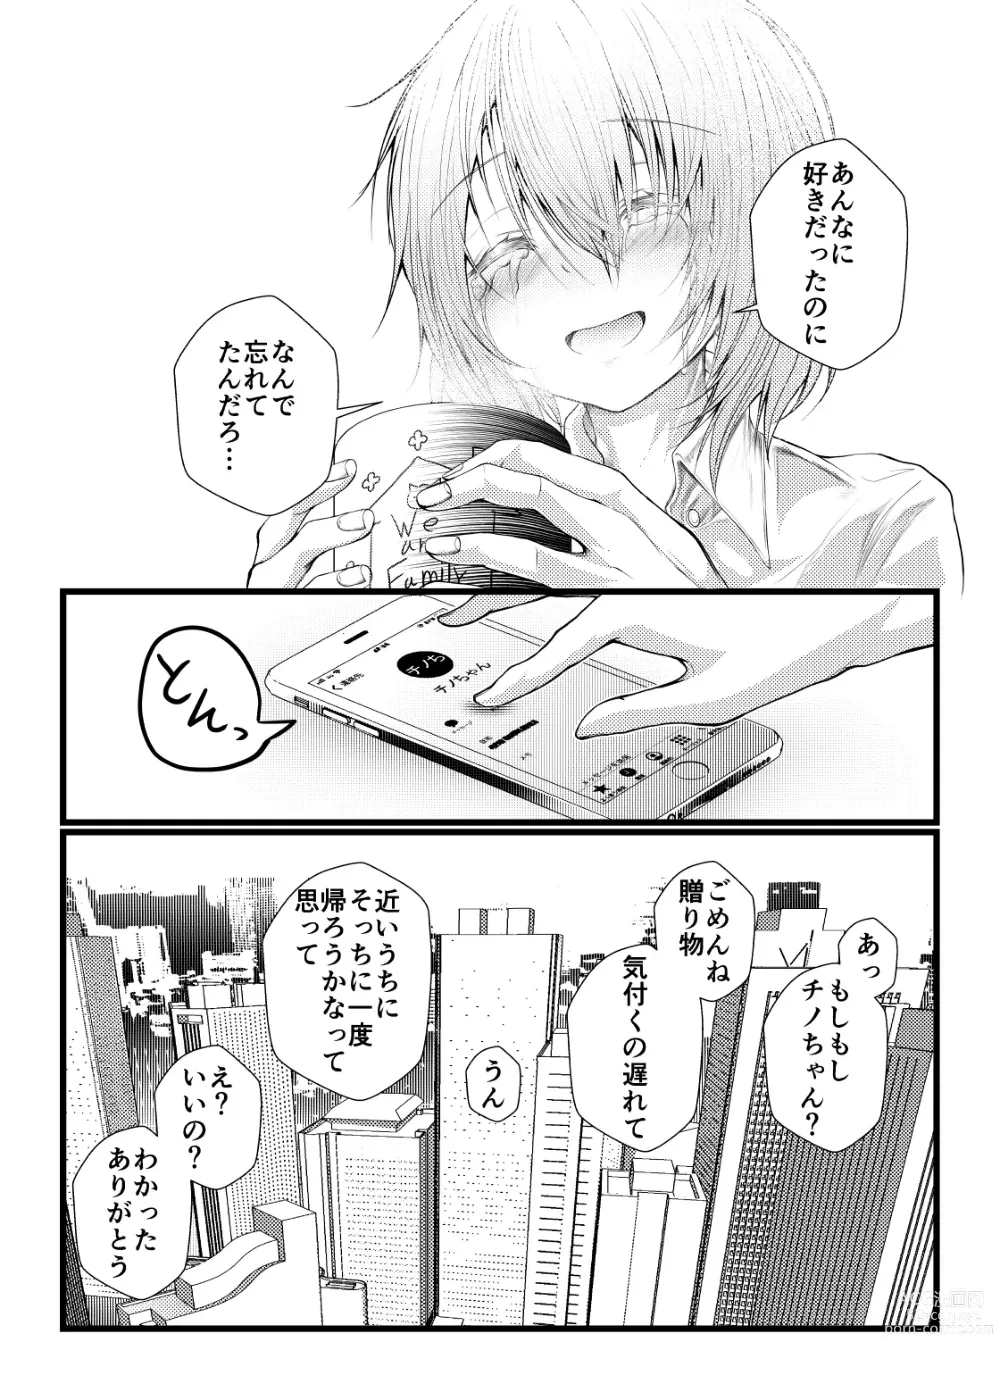 Page 4 of doujinshi Shachiku ni Natta Kokoa-chan ga Kigumi no Machi ni Kaeru Manga